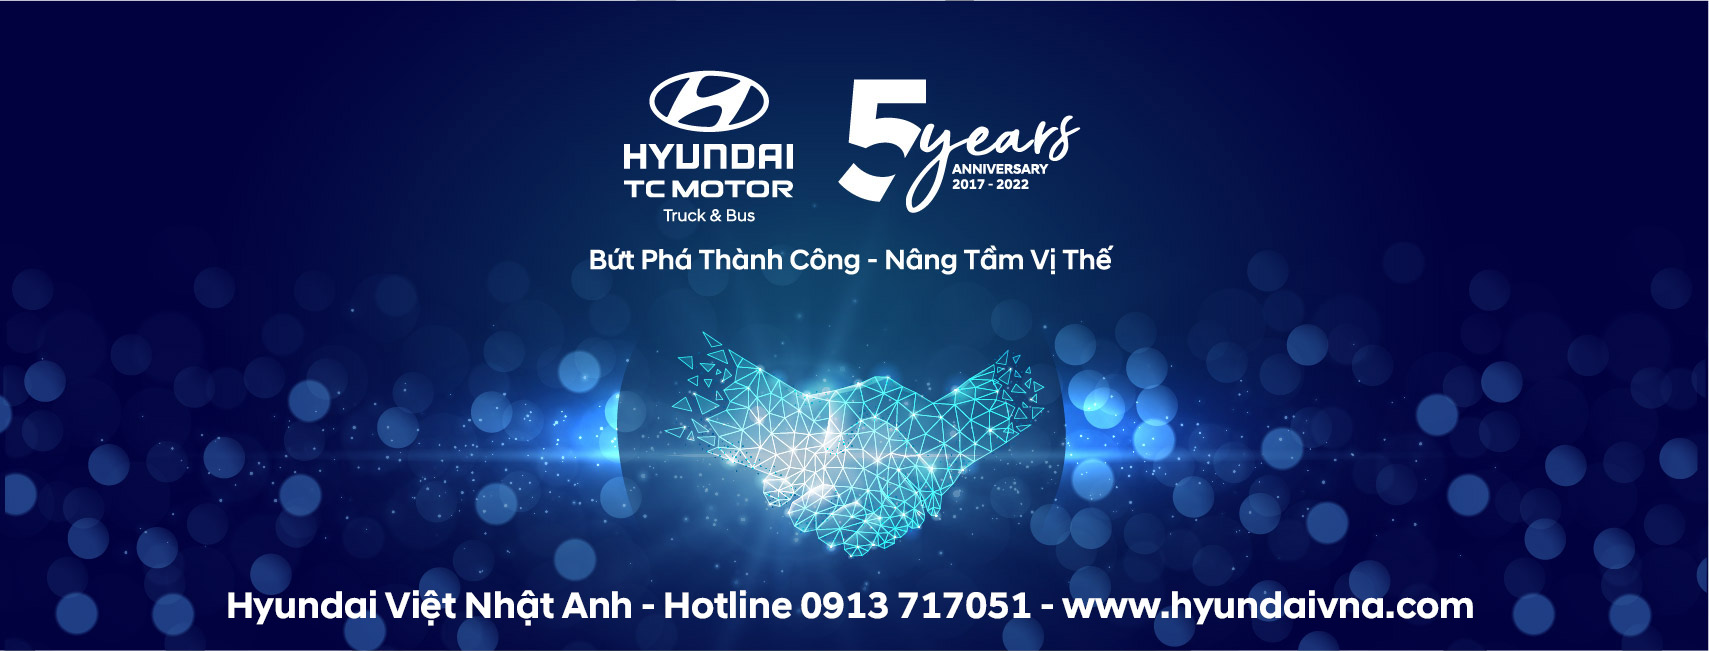 Hyundai Viet Nhat Anh